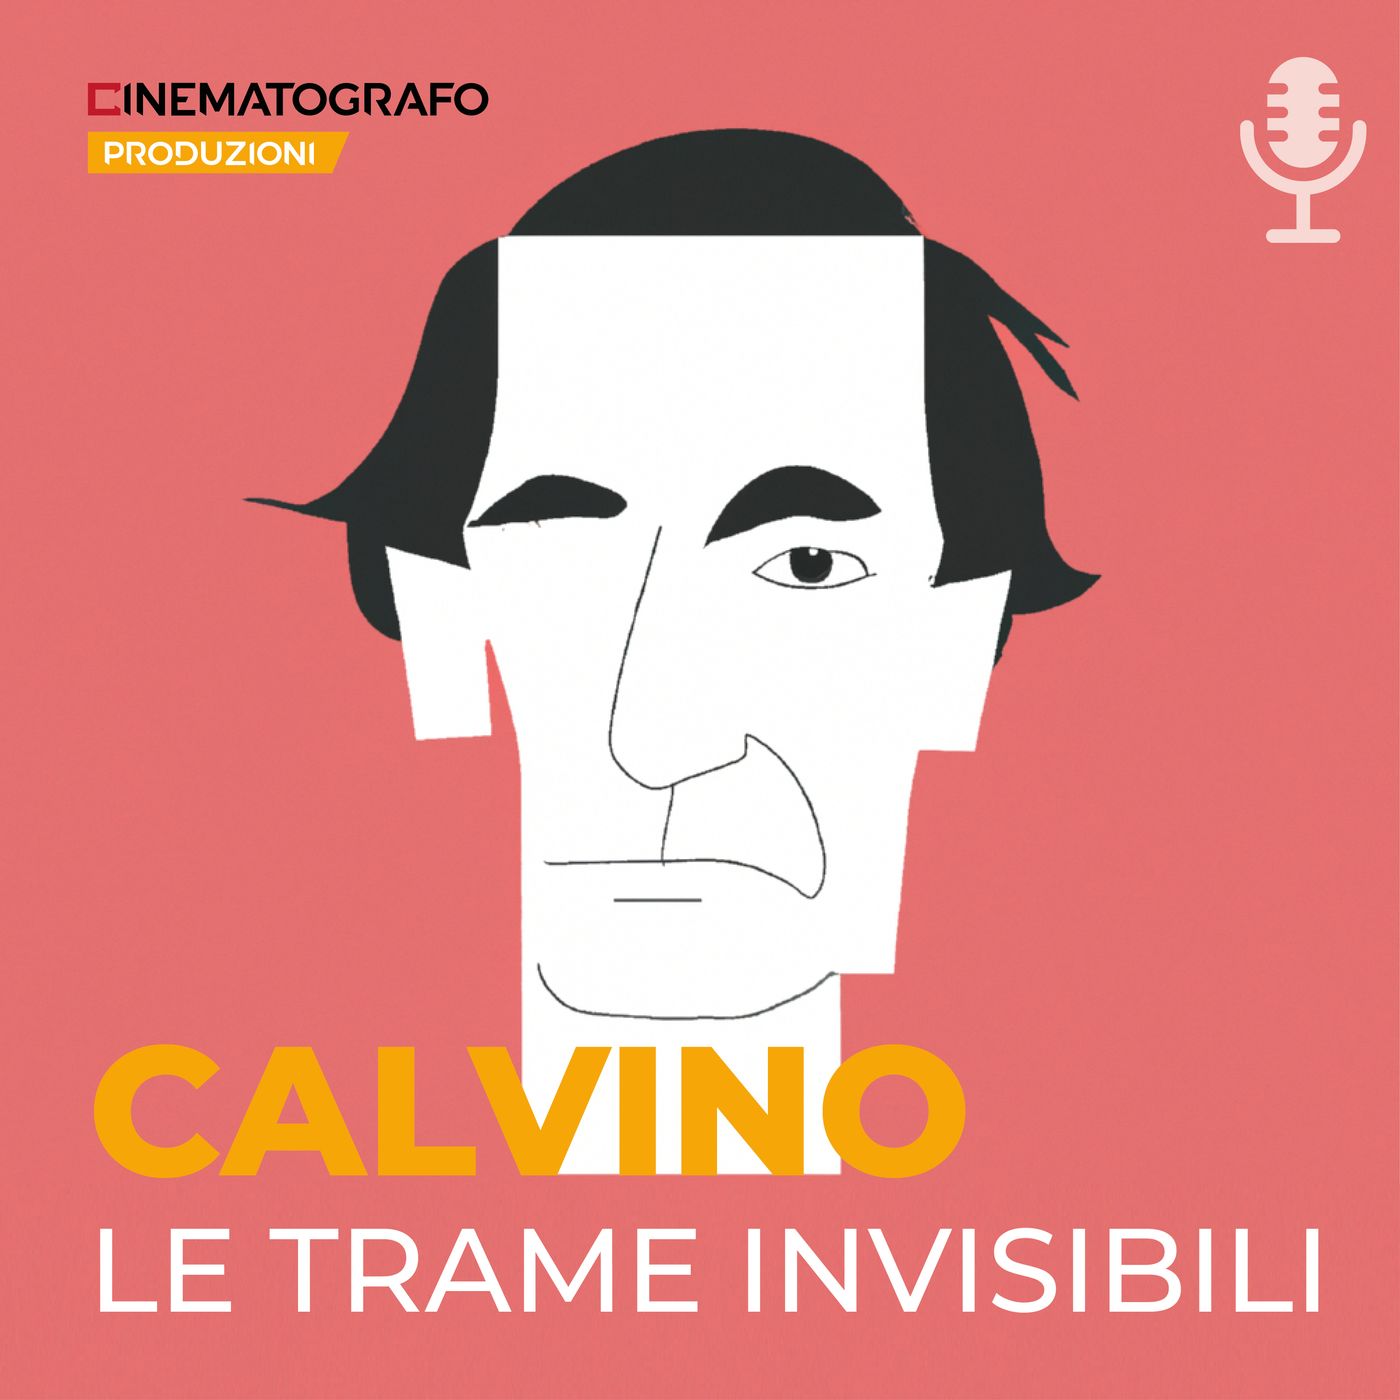 Calvino, le trame invisibili - Trailer